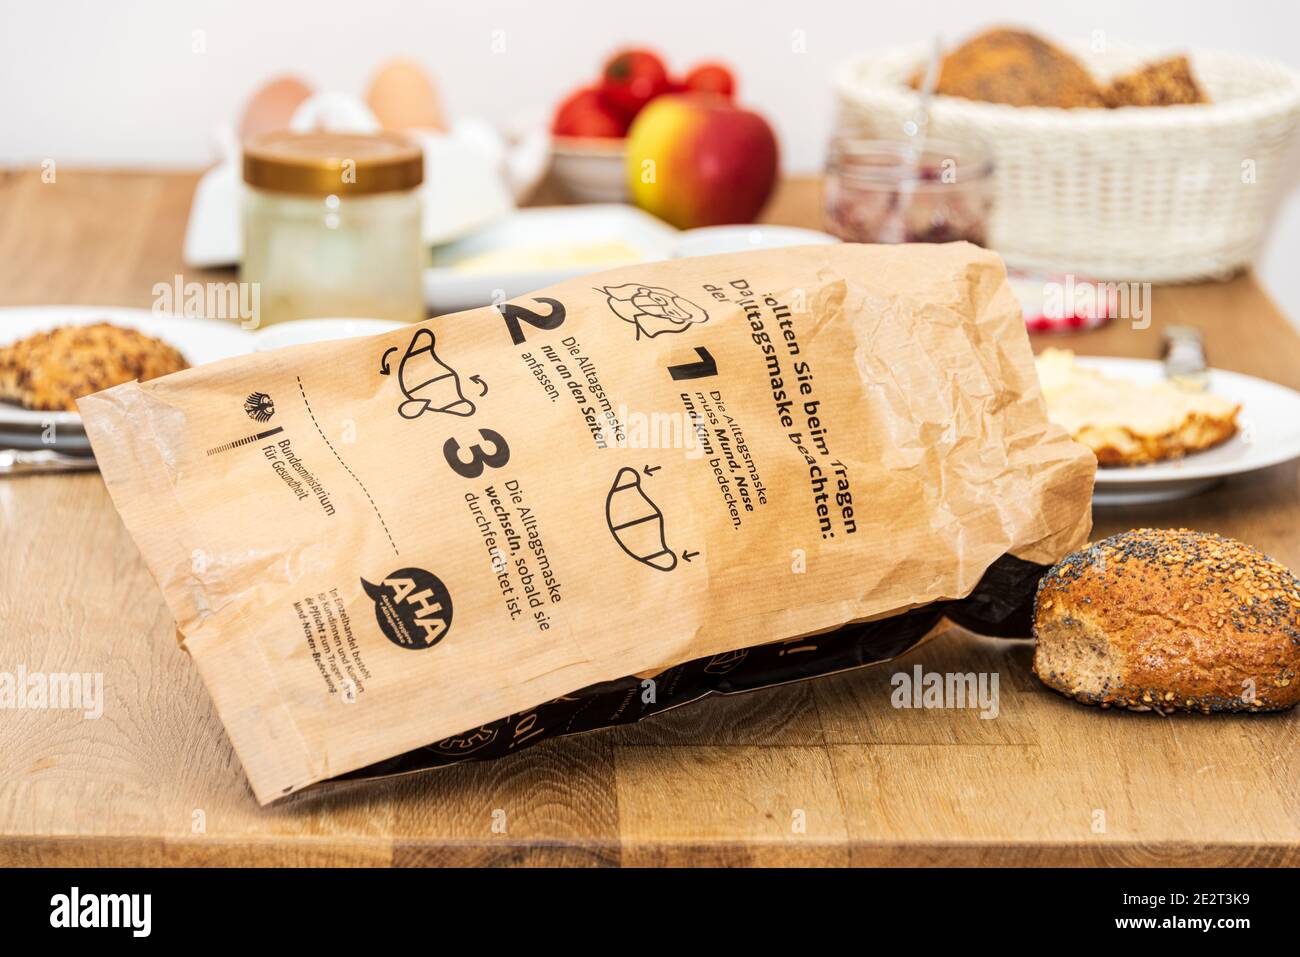 Eine Aktion der Bäckerinnung Brottüten mit der Aufforderung zur Nutzung von Alltagsmasken gegen die Corona-Pandemie Stock Photo